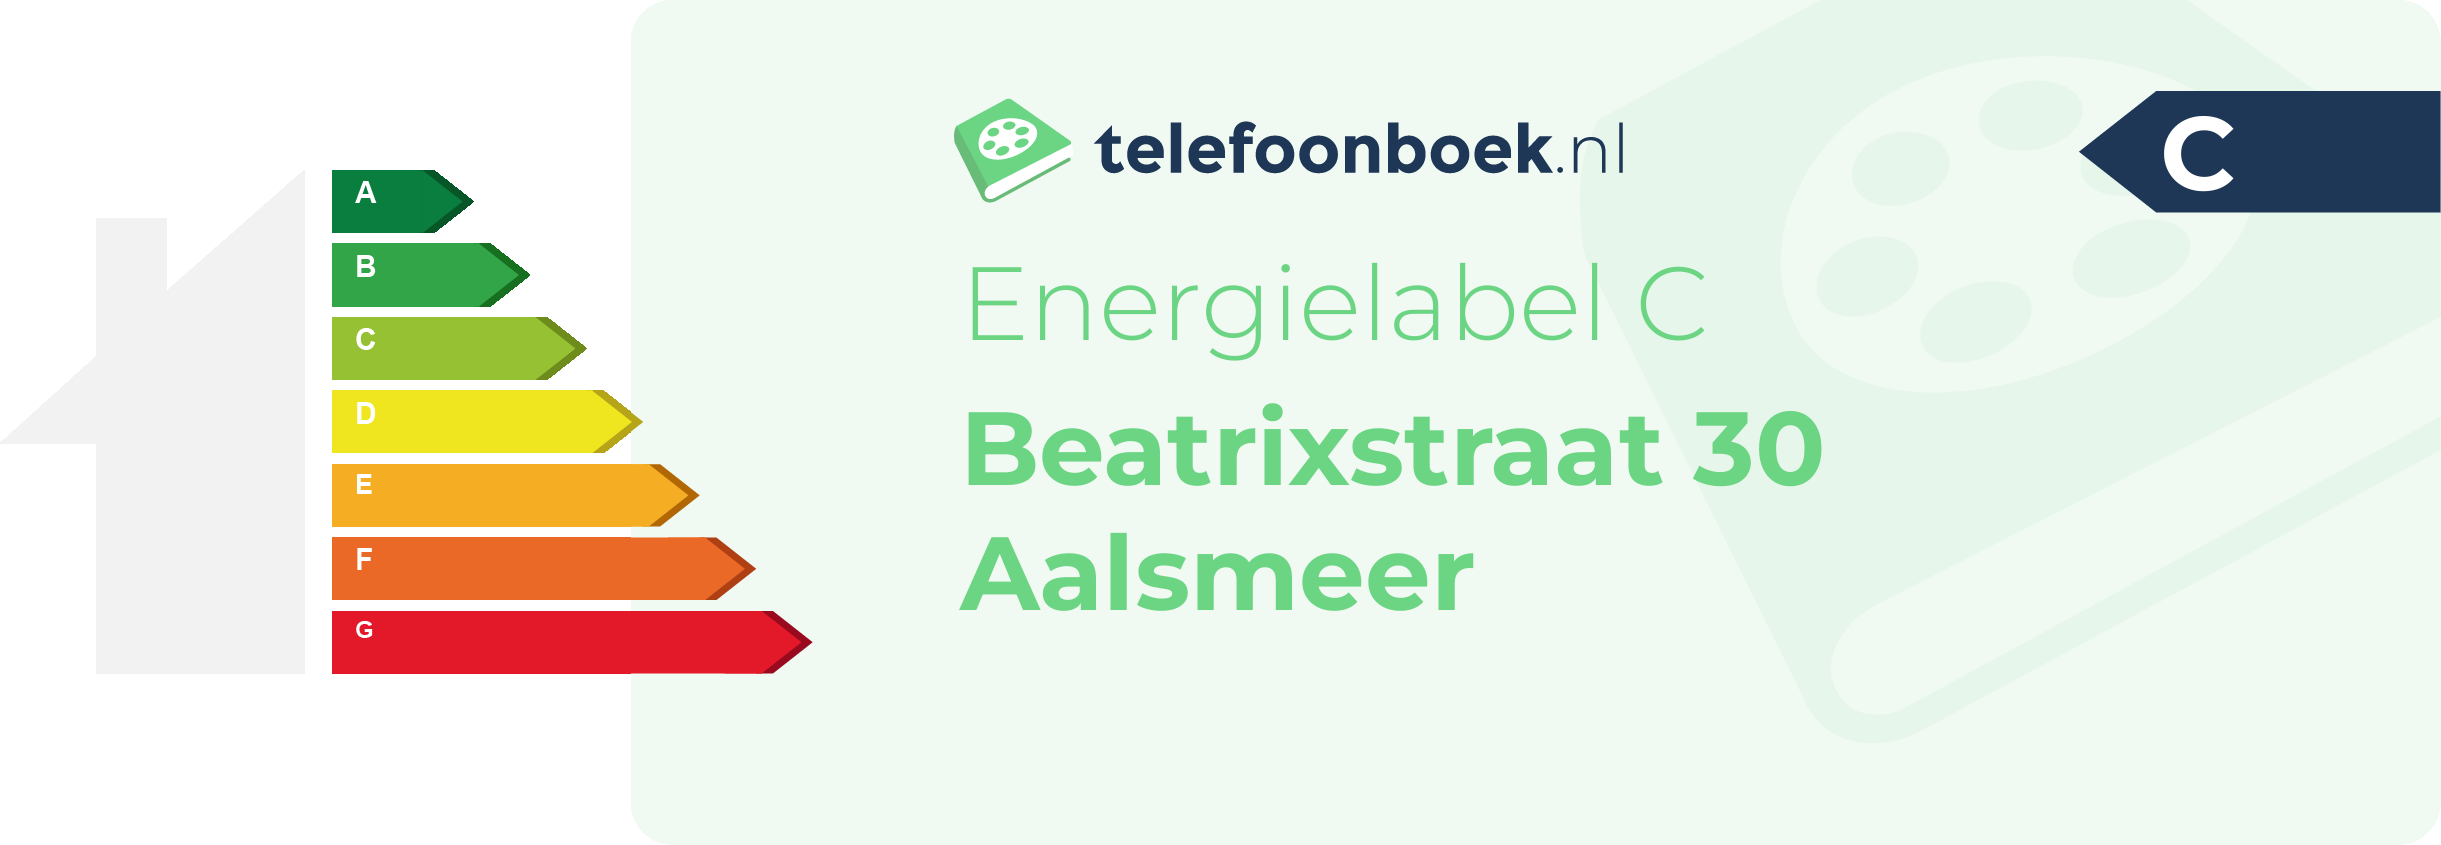 Energielabel Beatrixstraat 30 Aalsmeer